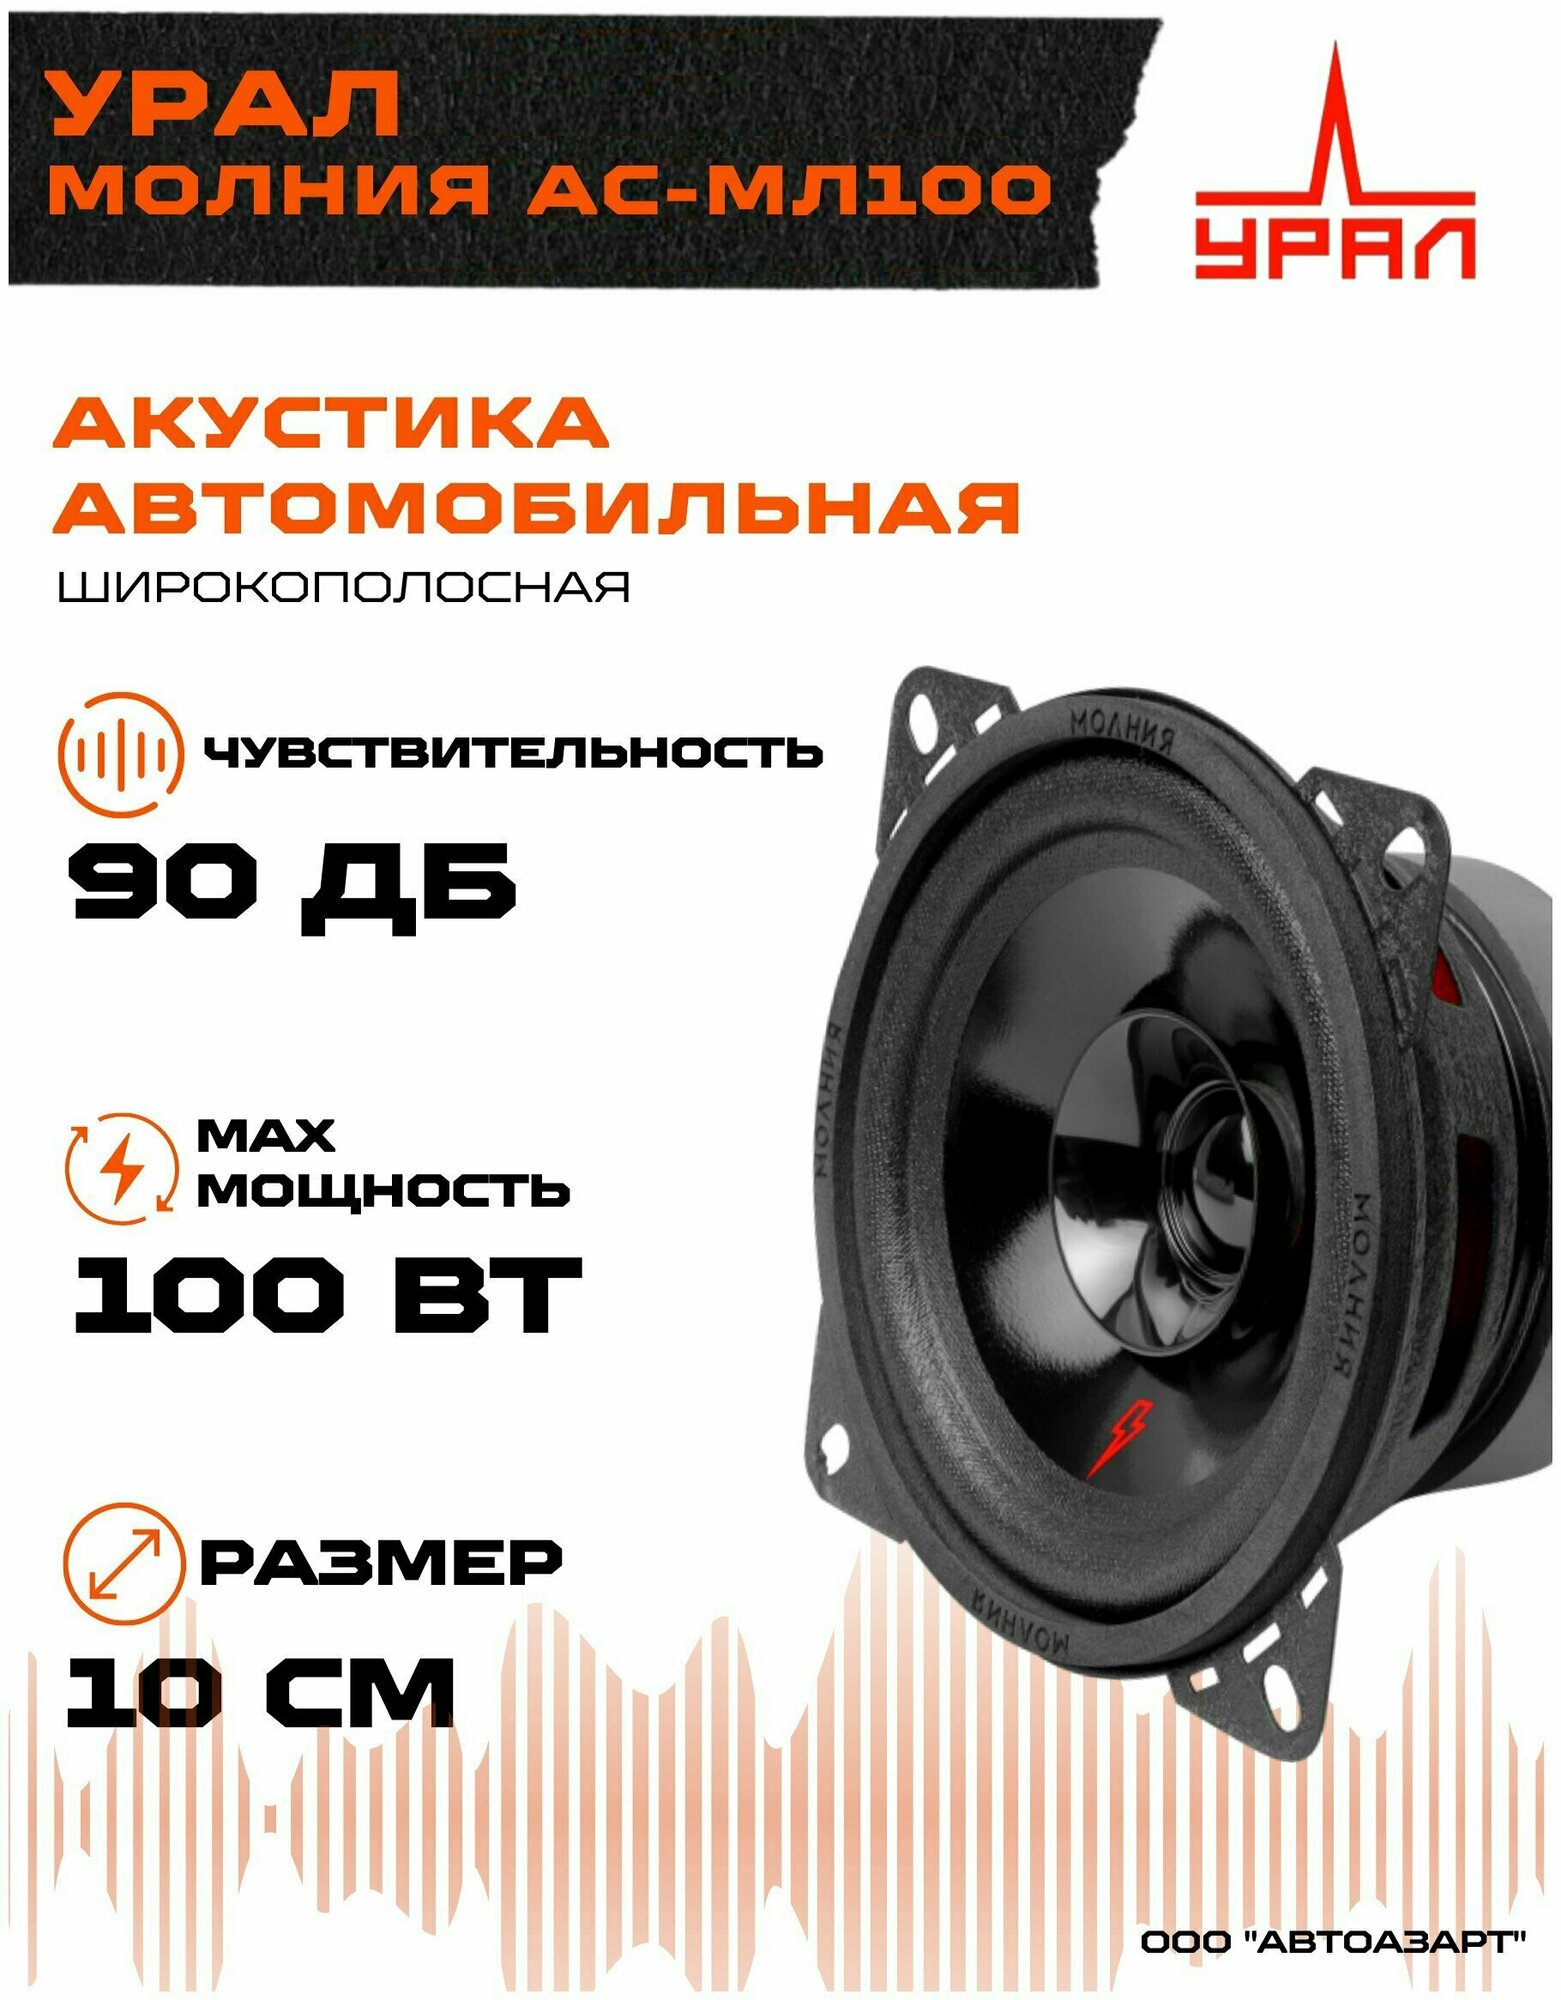 Автомобильная акустика Урал Молния АС-МЛ100 (10см) ( Громкая  широкополосная  пара)